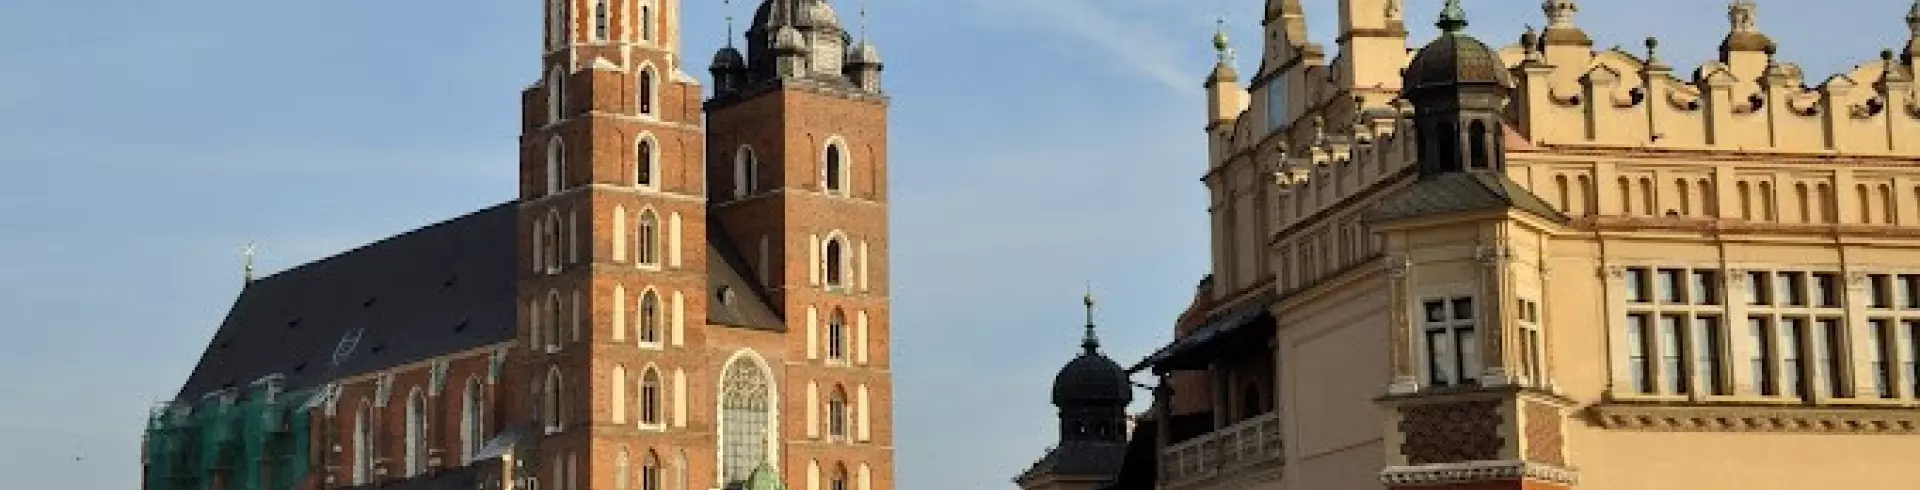 KRAKÓW: Katedra Wawelska - Ogród Botaiczny UJ